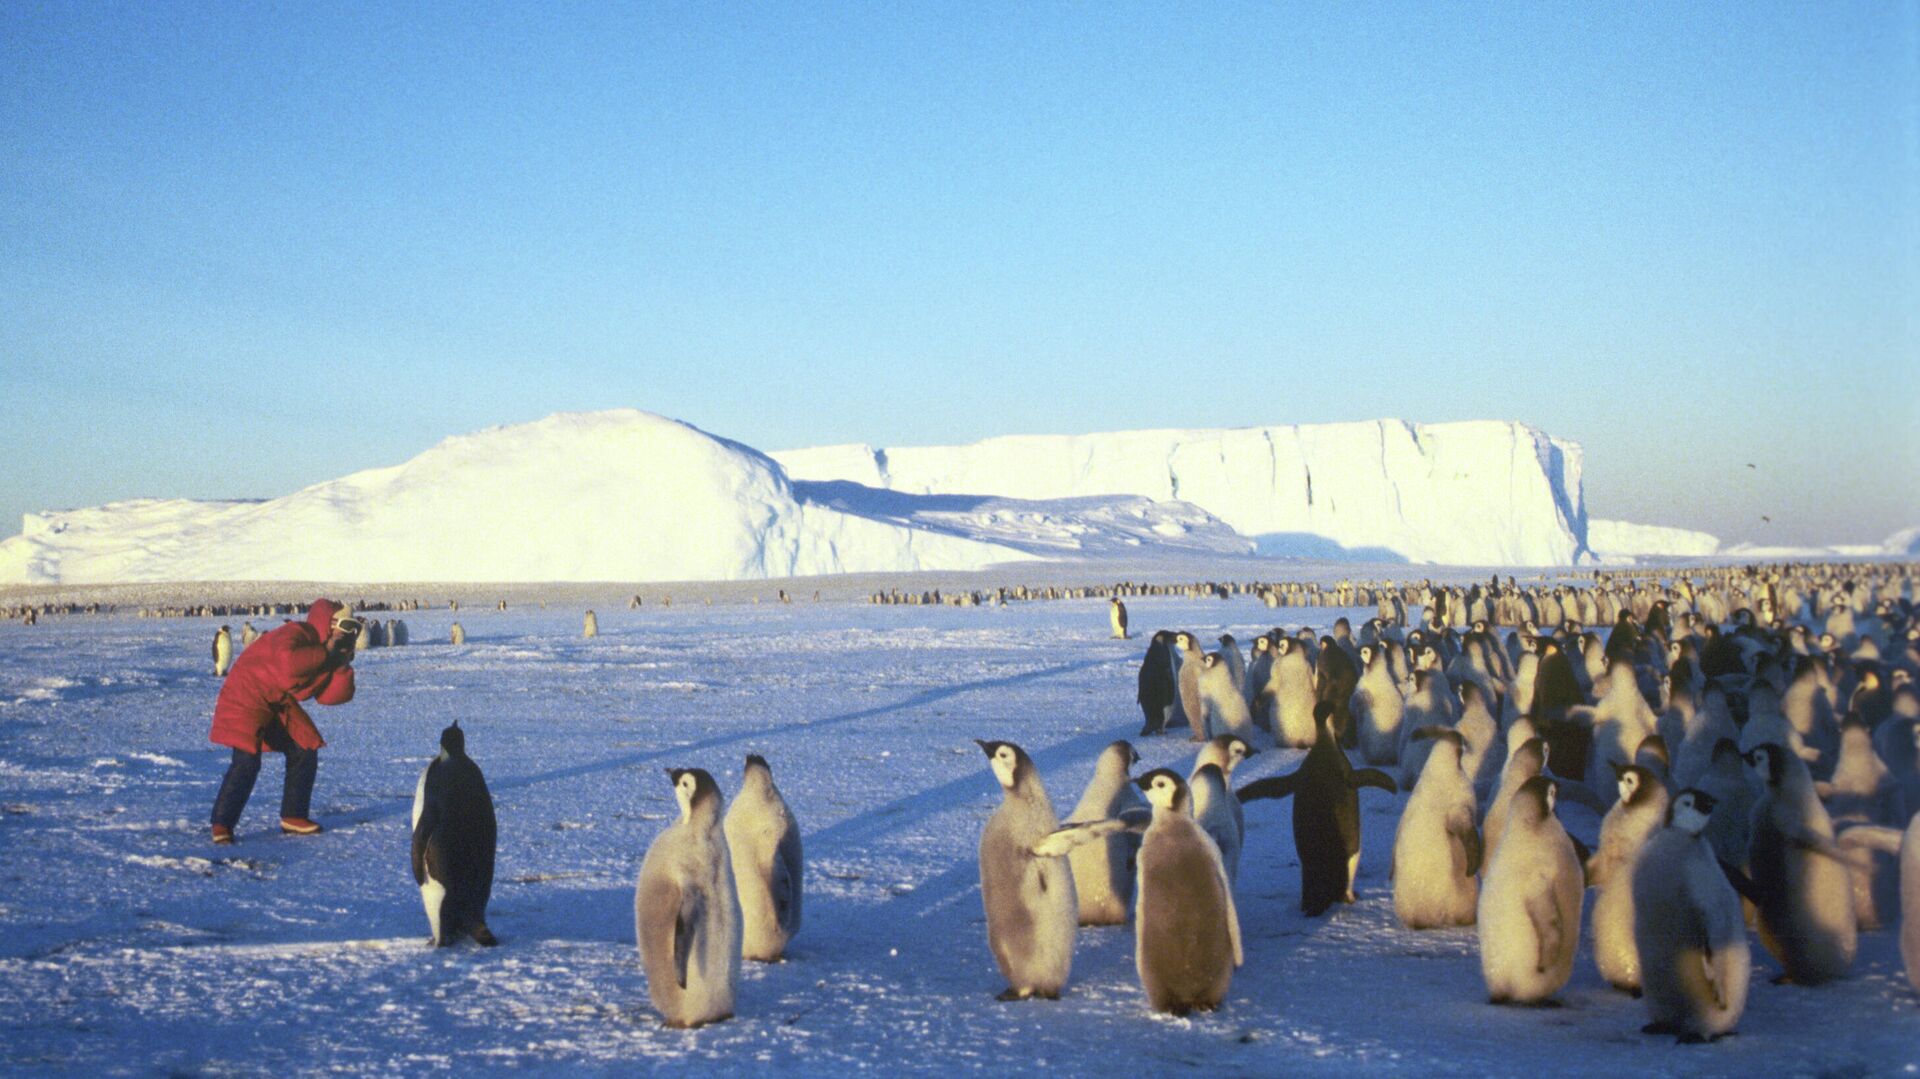 Пингвины в Антарктиде - РИА Новости, 1920, 05.01.2021